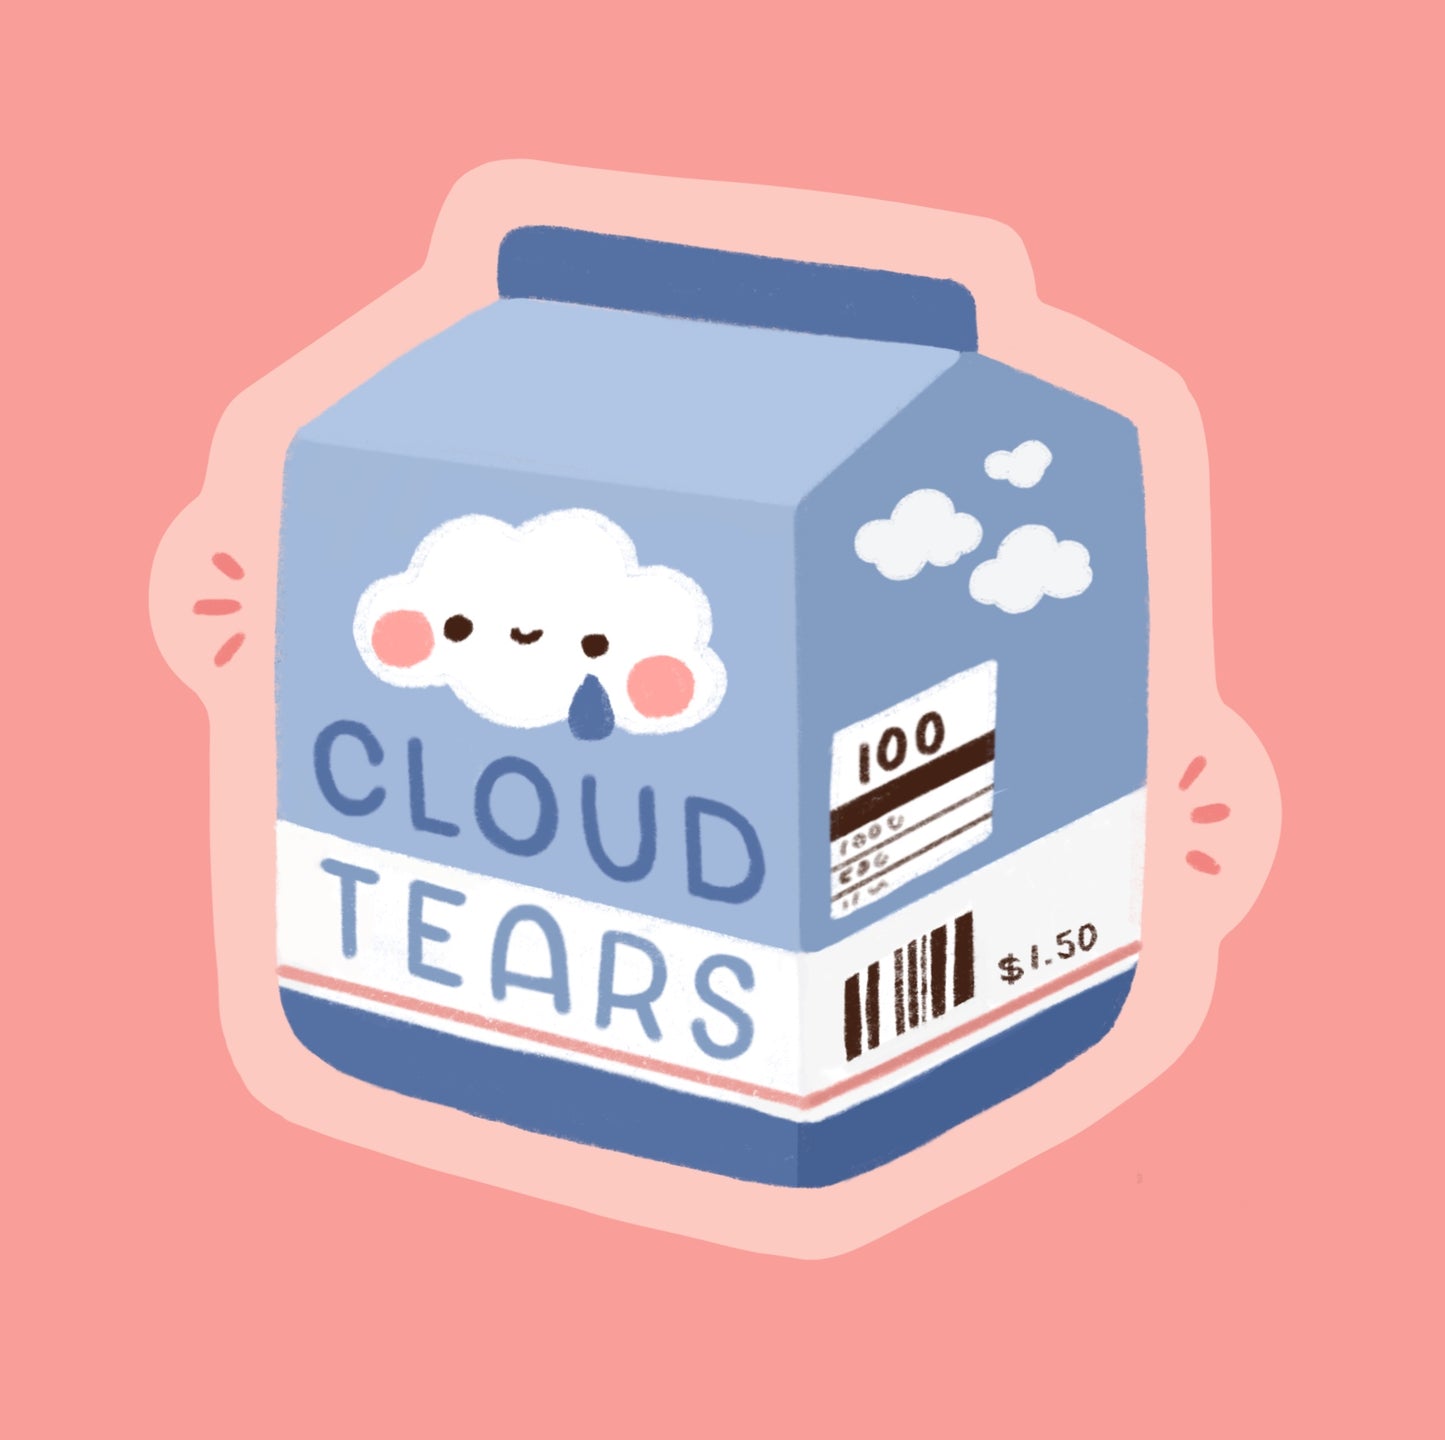 Cloud tears sticker